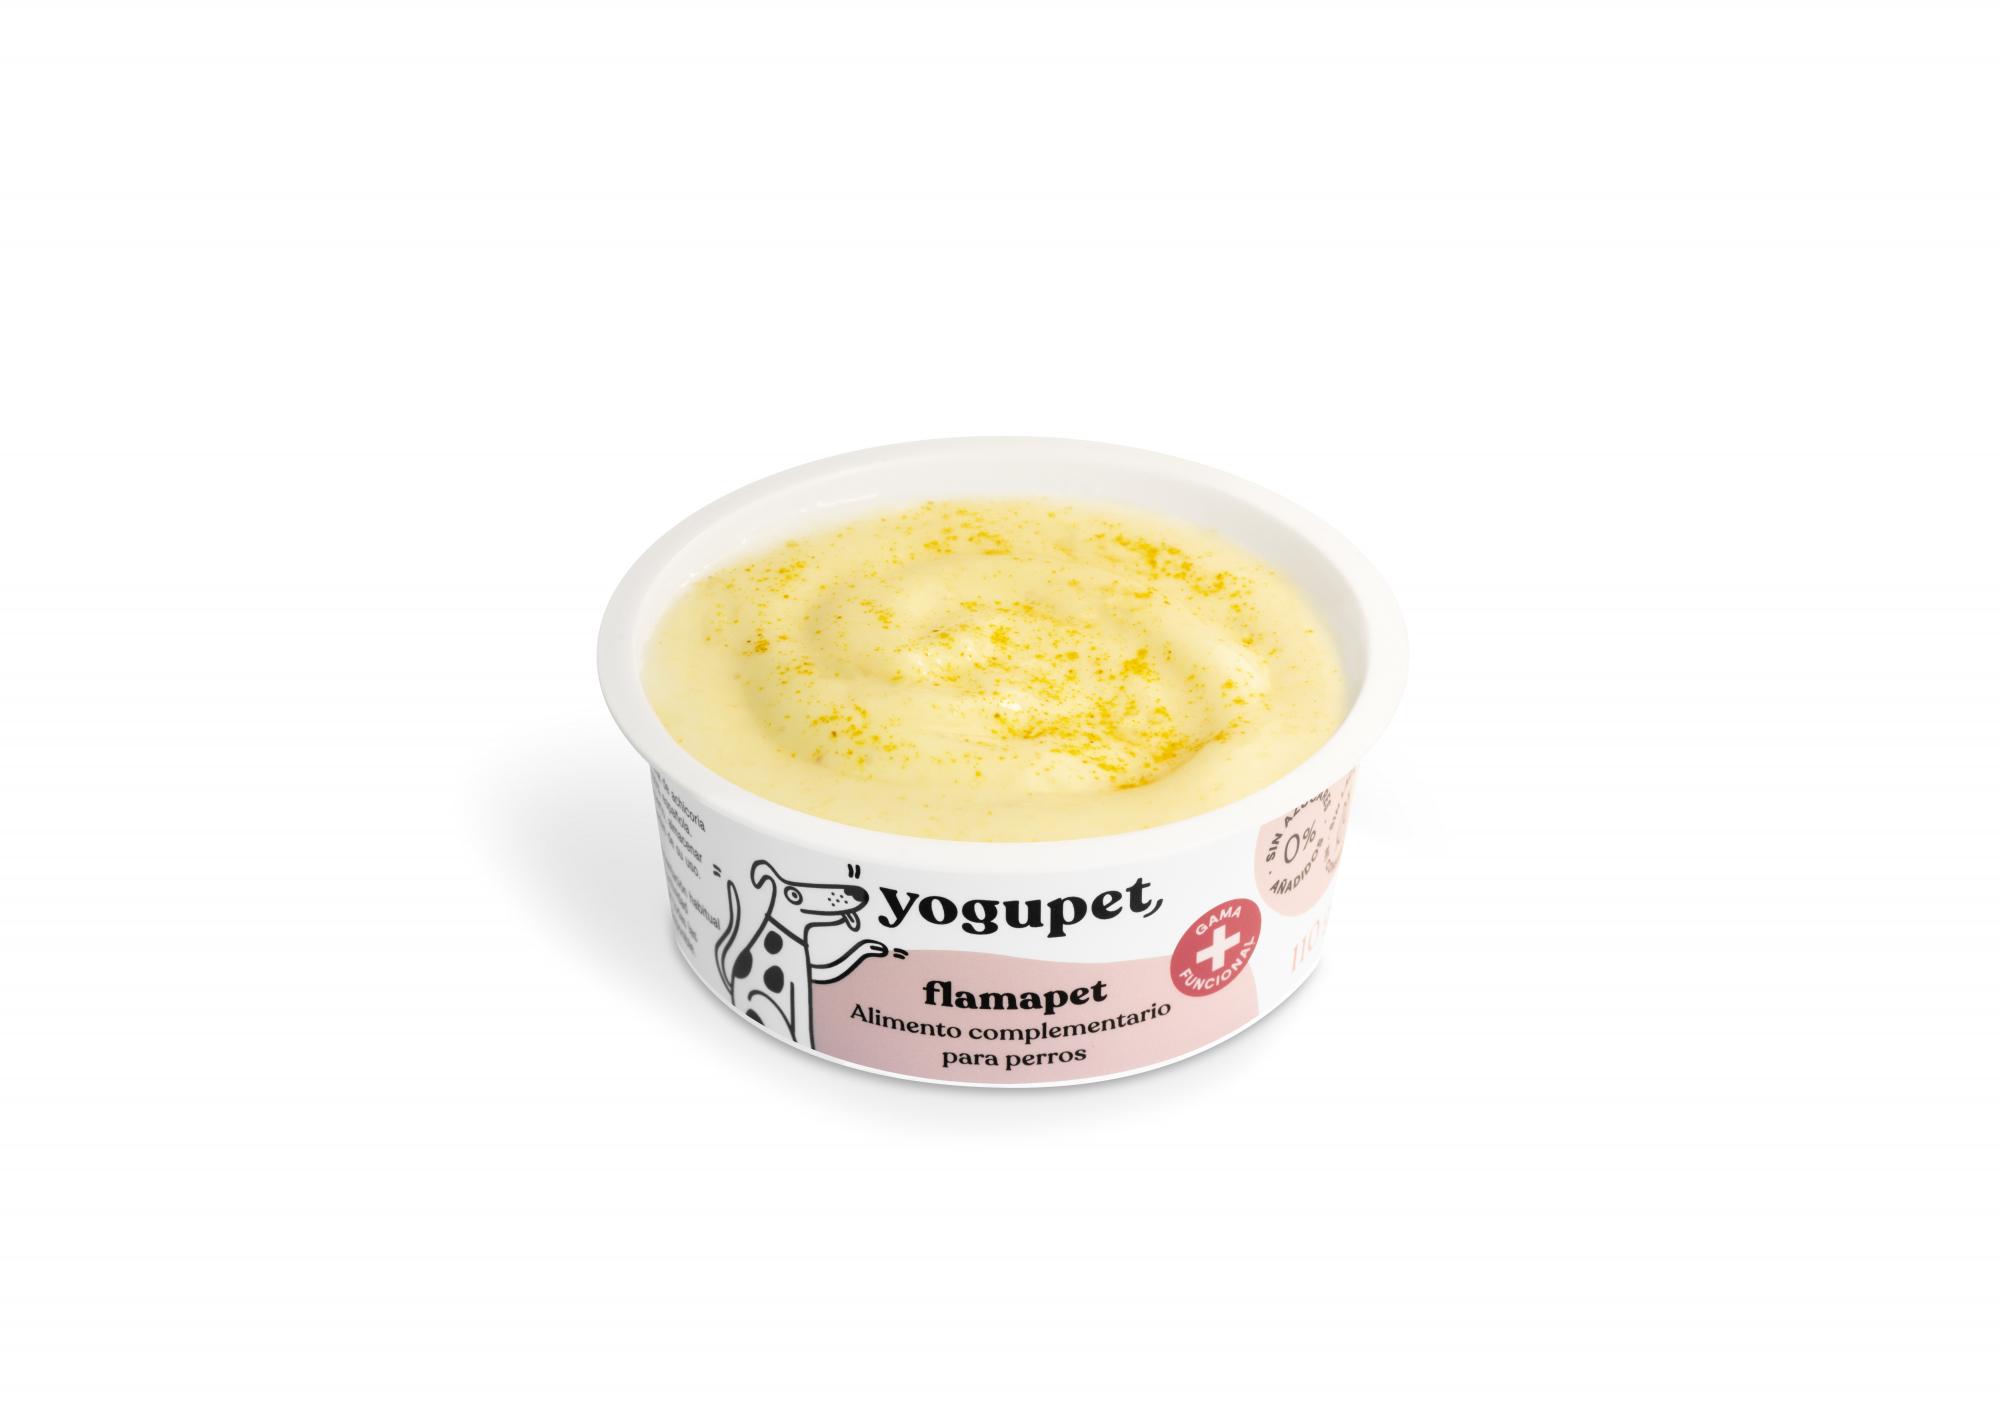 Yogupet Flamapet alivia dores articulares Iogurte com mel e cúrcuma para cão